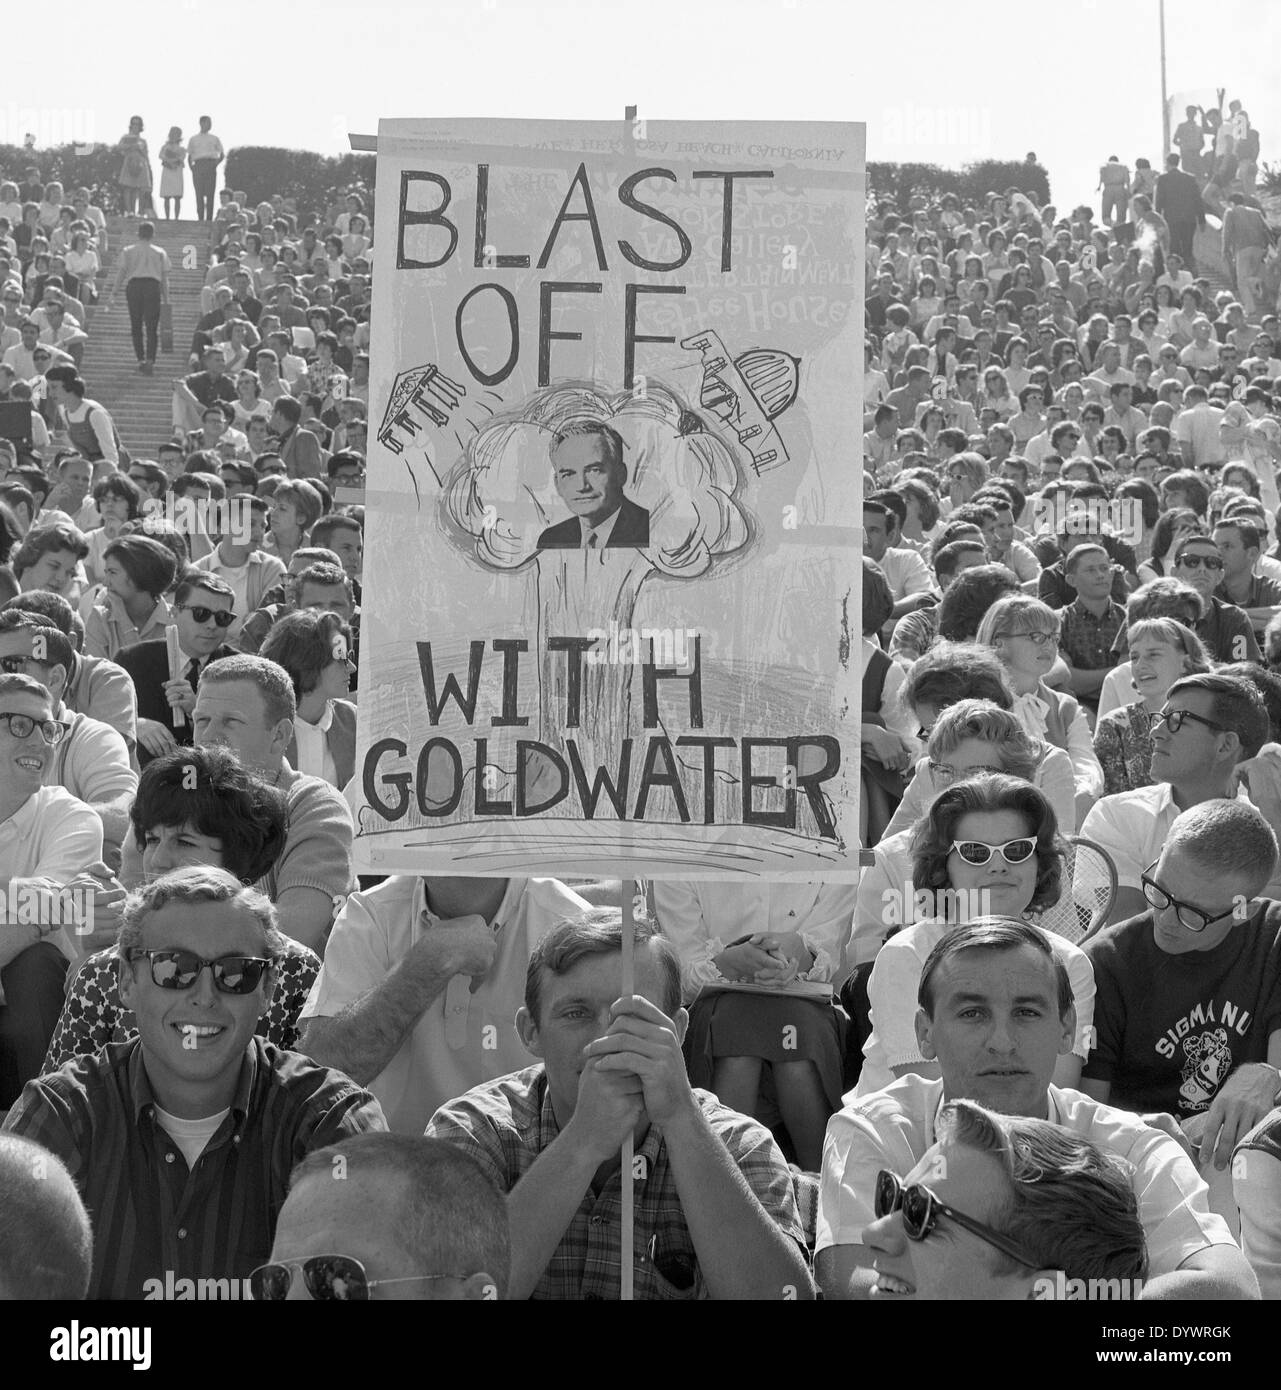 Foule lors d'un rassemblement politique pour le sénateur Barry Goldwater à San Diego, Californie, États-Unis, au début des années 1960 Banque D'Images